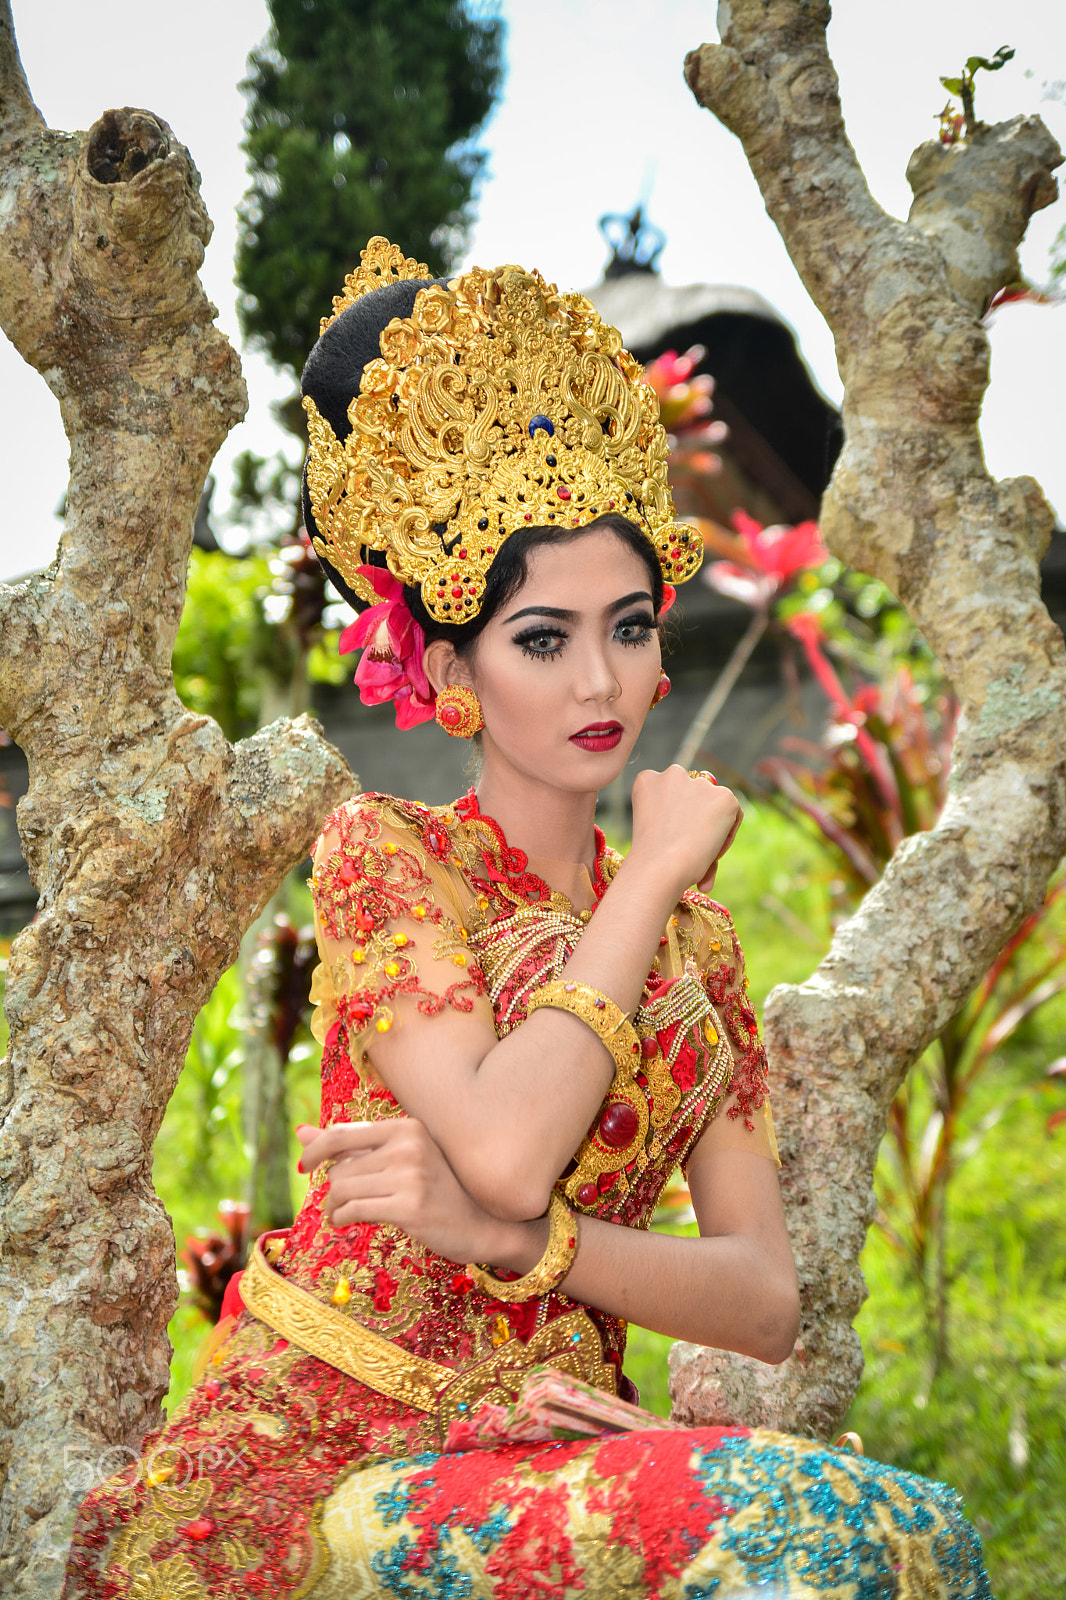 Nikon D7100 sample photo. Beautyful balinese girl in bali photography